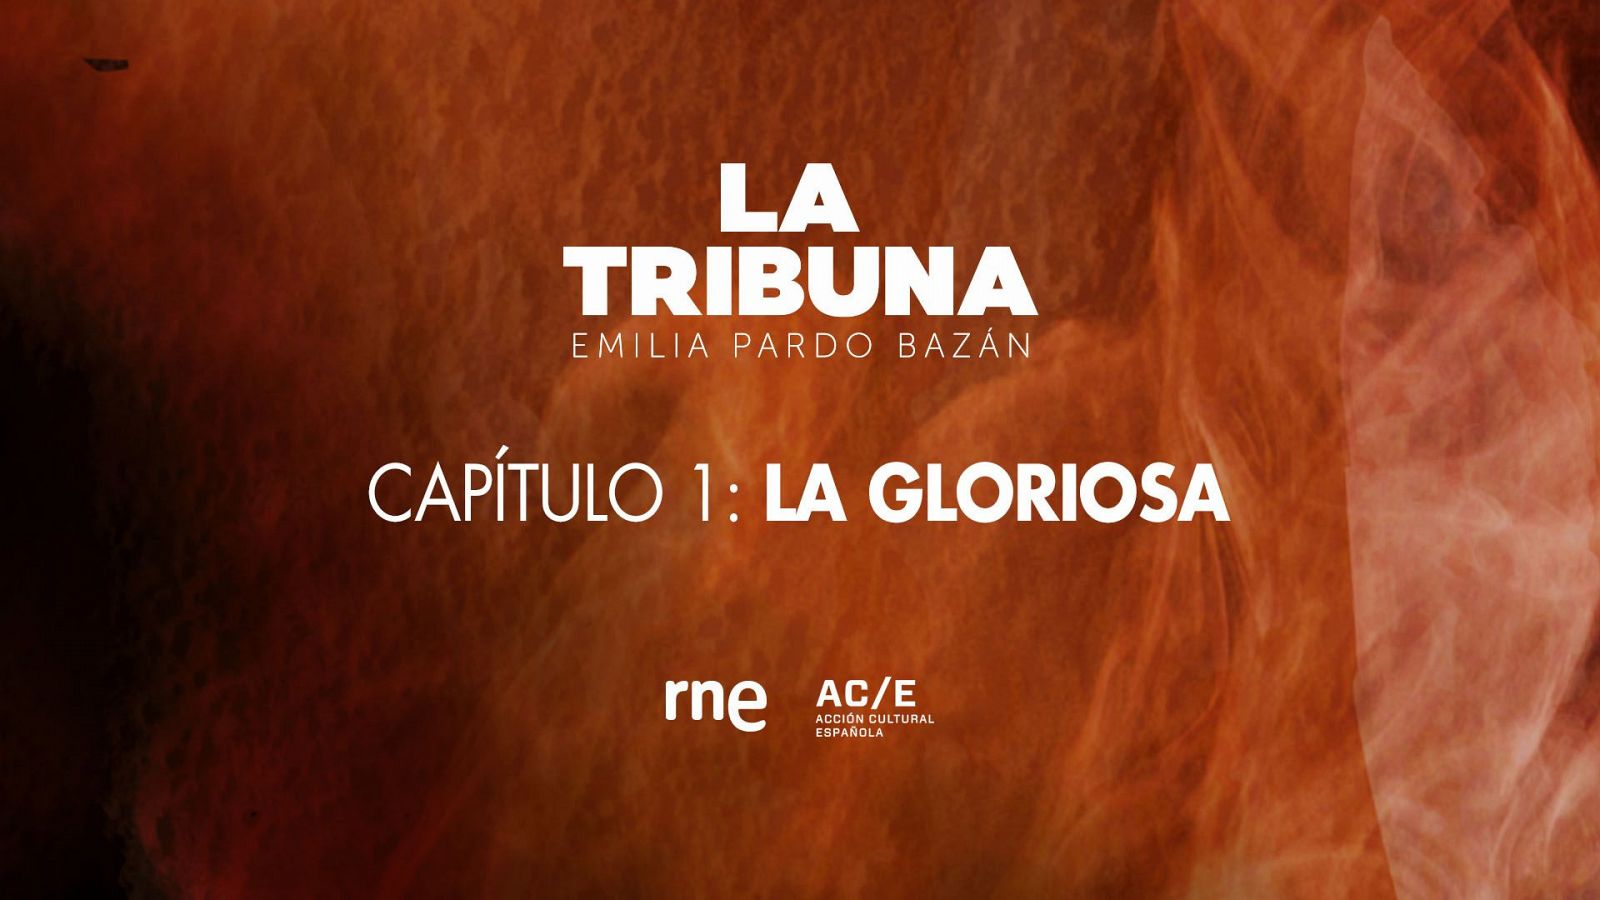 Escucha el estreno de la ficci�n sonora 'La Tribuna', de Emilia Pardo Baz�n